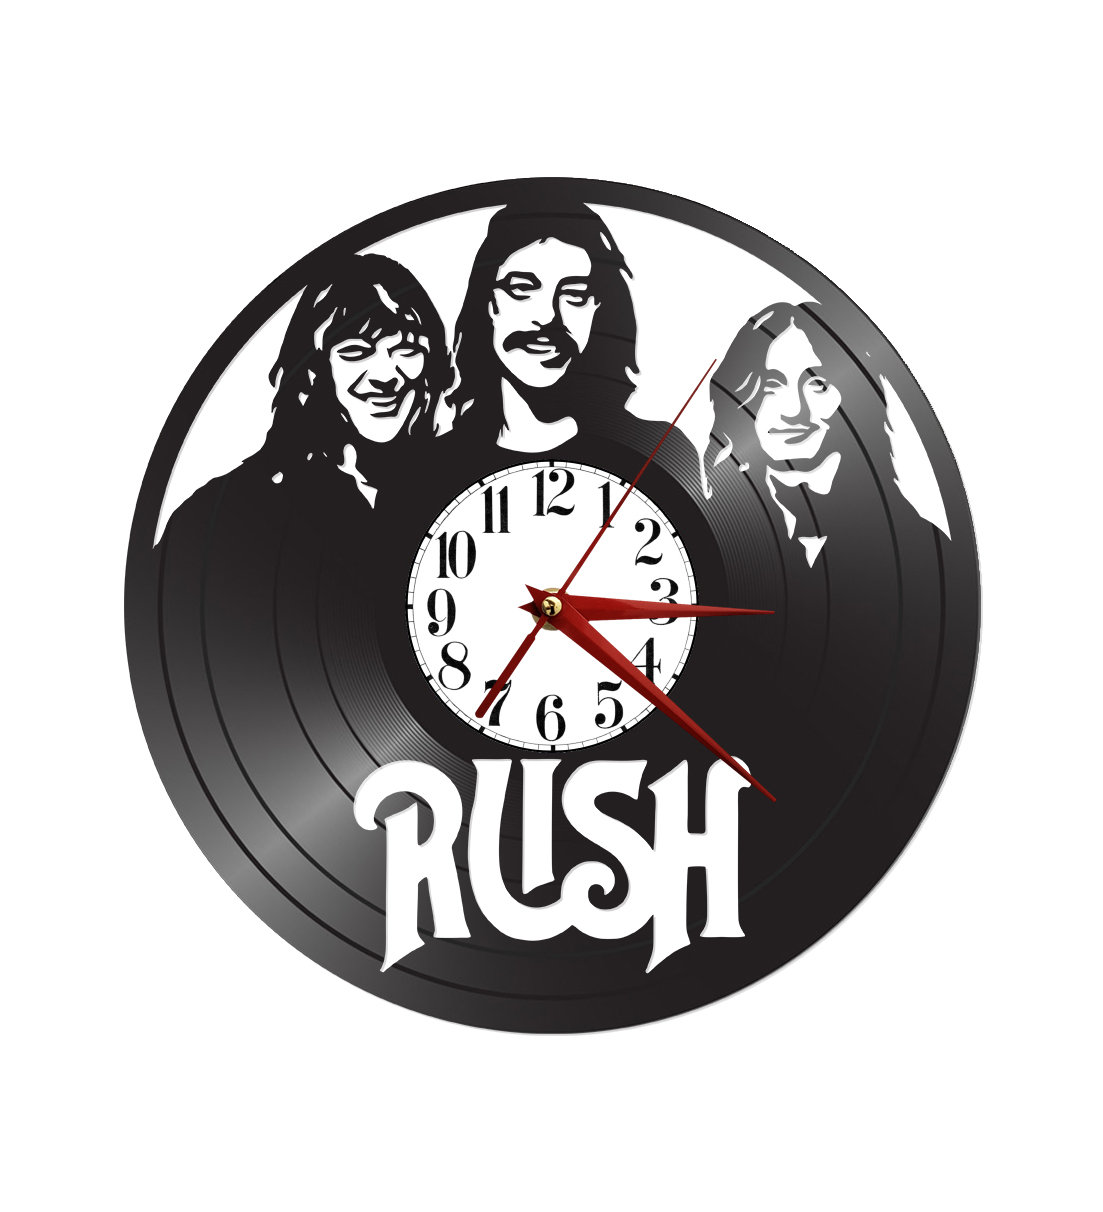 Vinilo de Colección, Vinyl Collection N° 80 Rush Band Album Presto